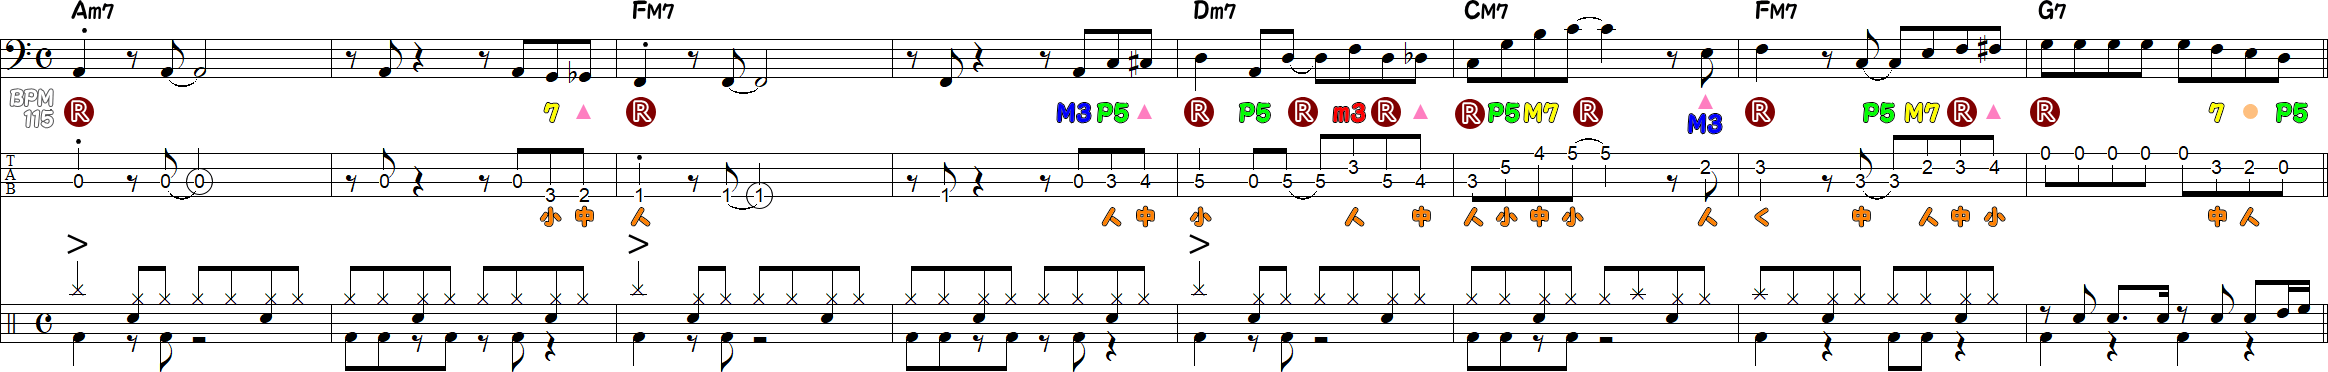 Bメロ8小節のベースラインの譜面